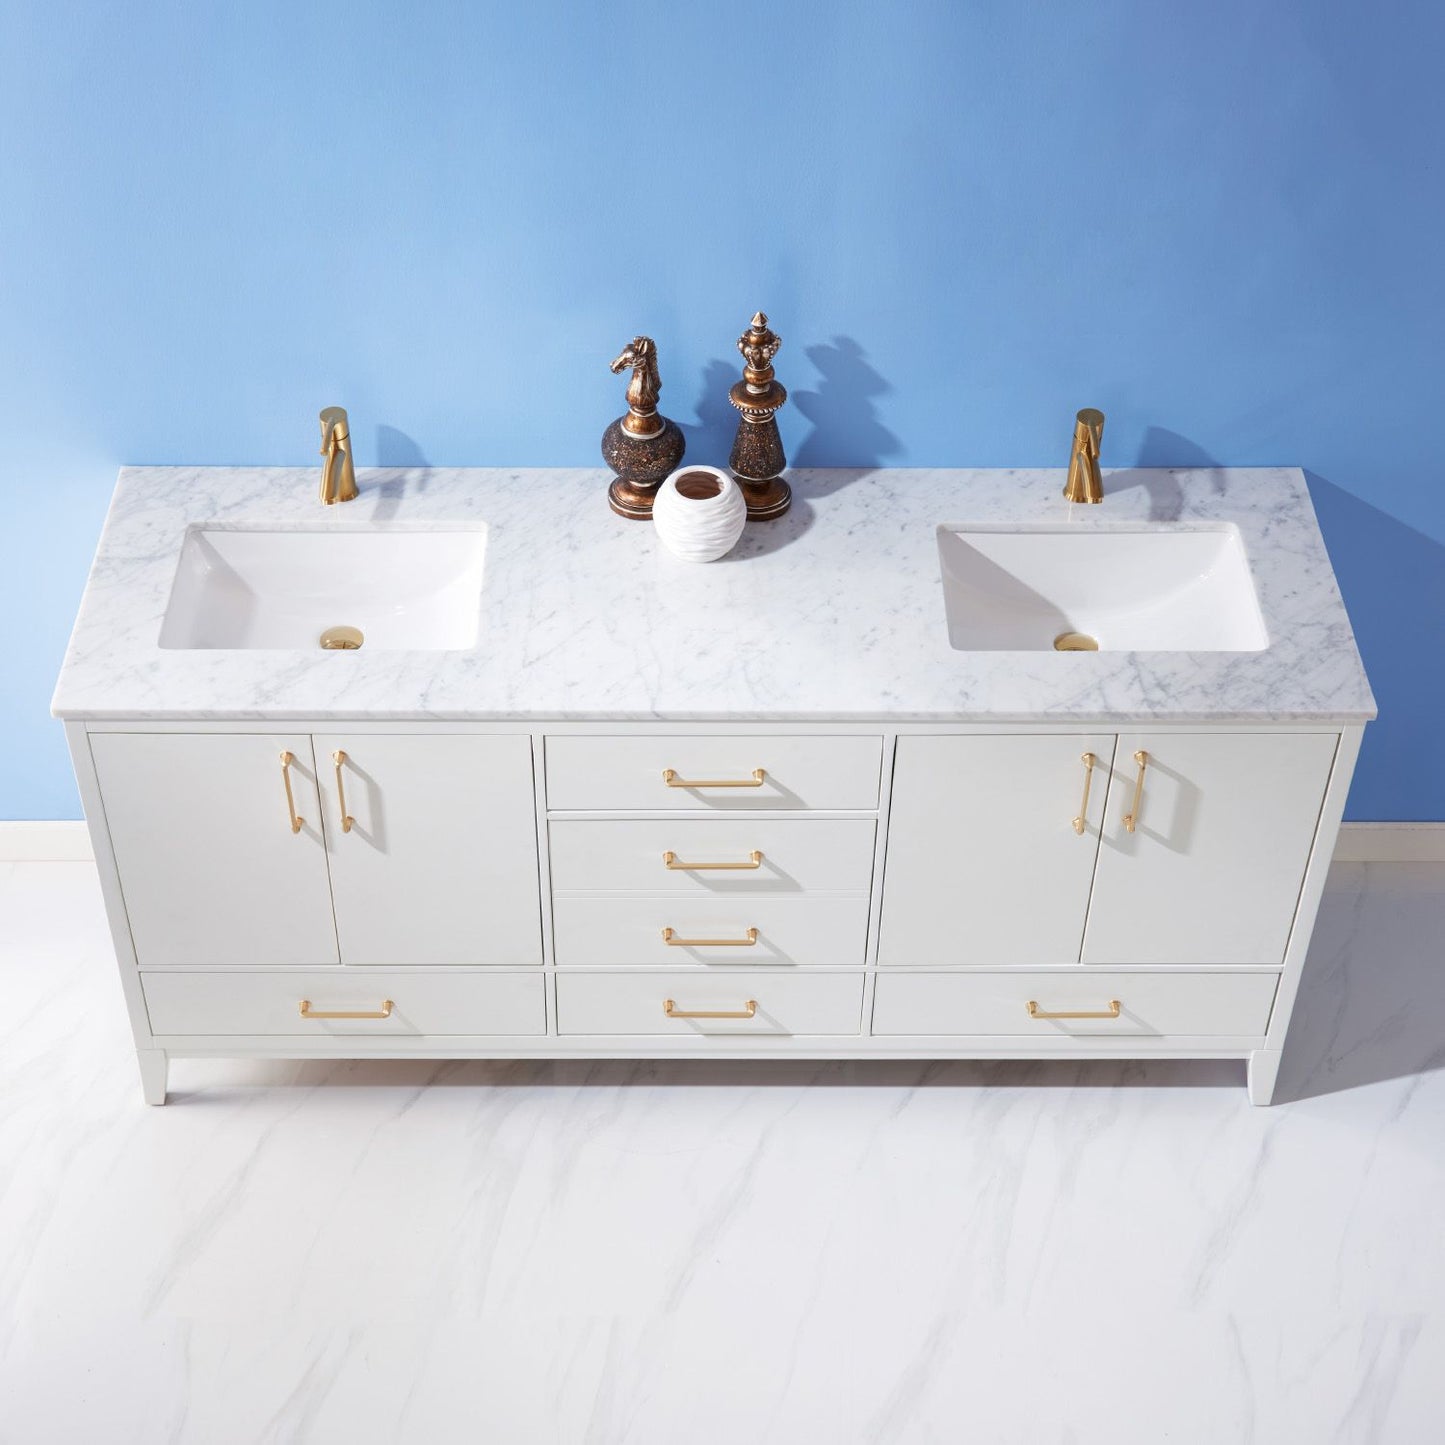 Altair Sutton 72" Double Bathroom Vanity Set Countertop without Mirror - Luxe Bathroom Vanities